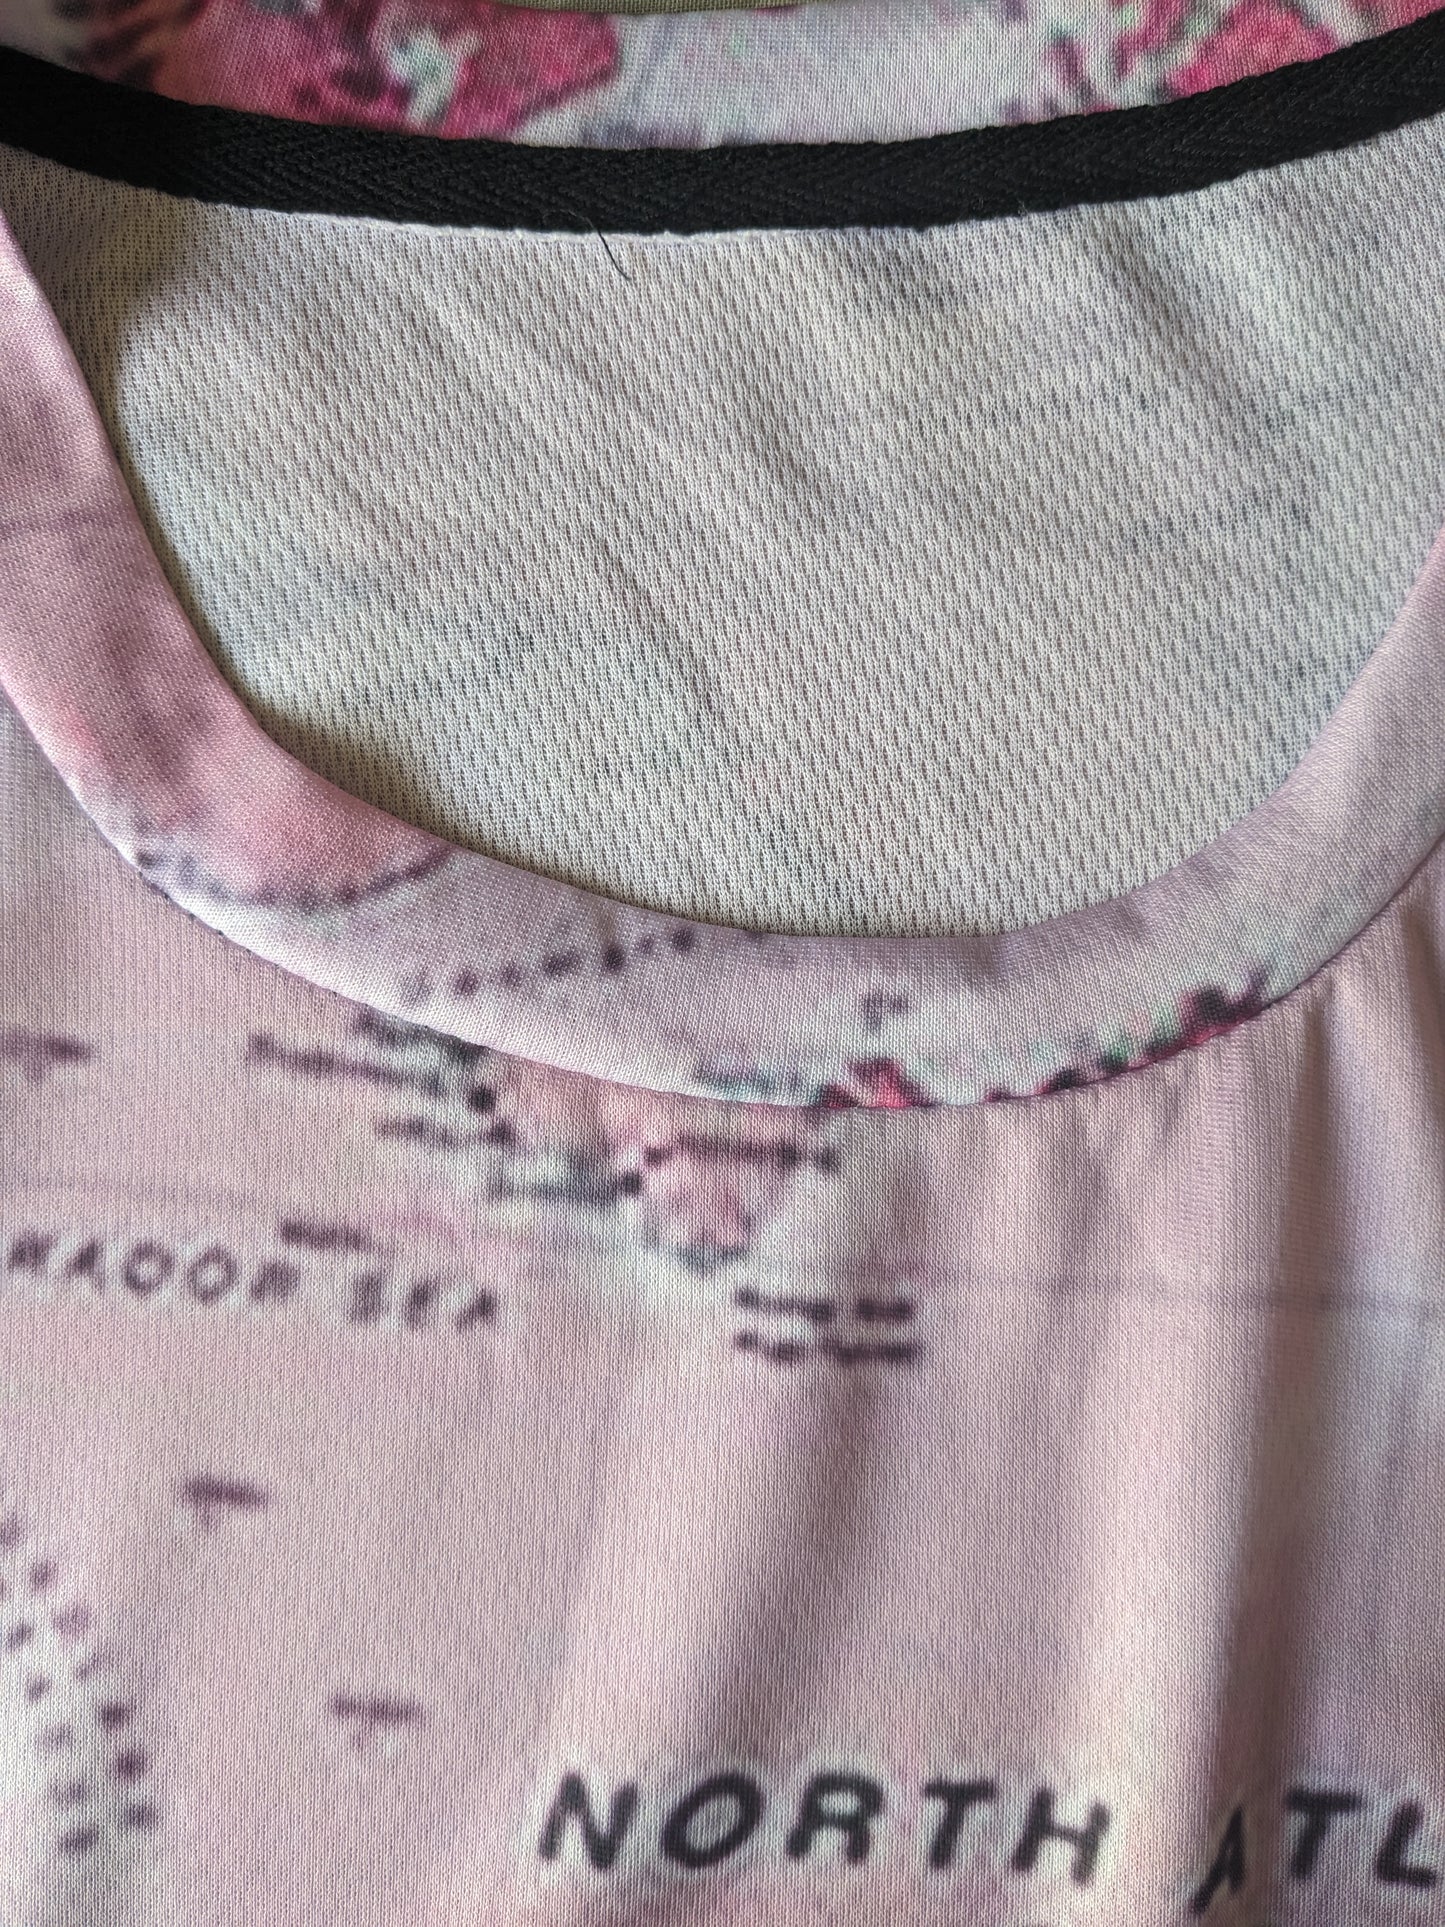 Camisa de estampado de mapa mundial. Pink en blanco y negro de color. Tamaño 2xl / 3xl. estirar.